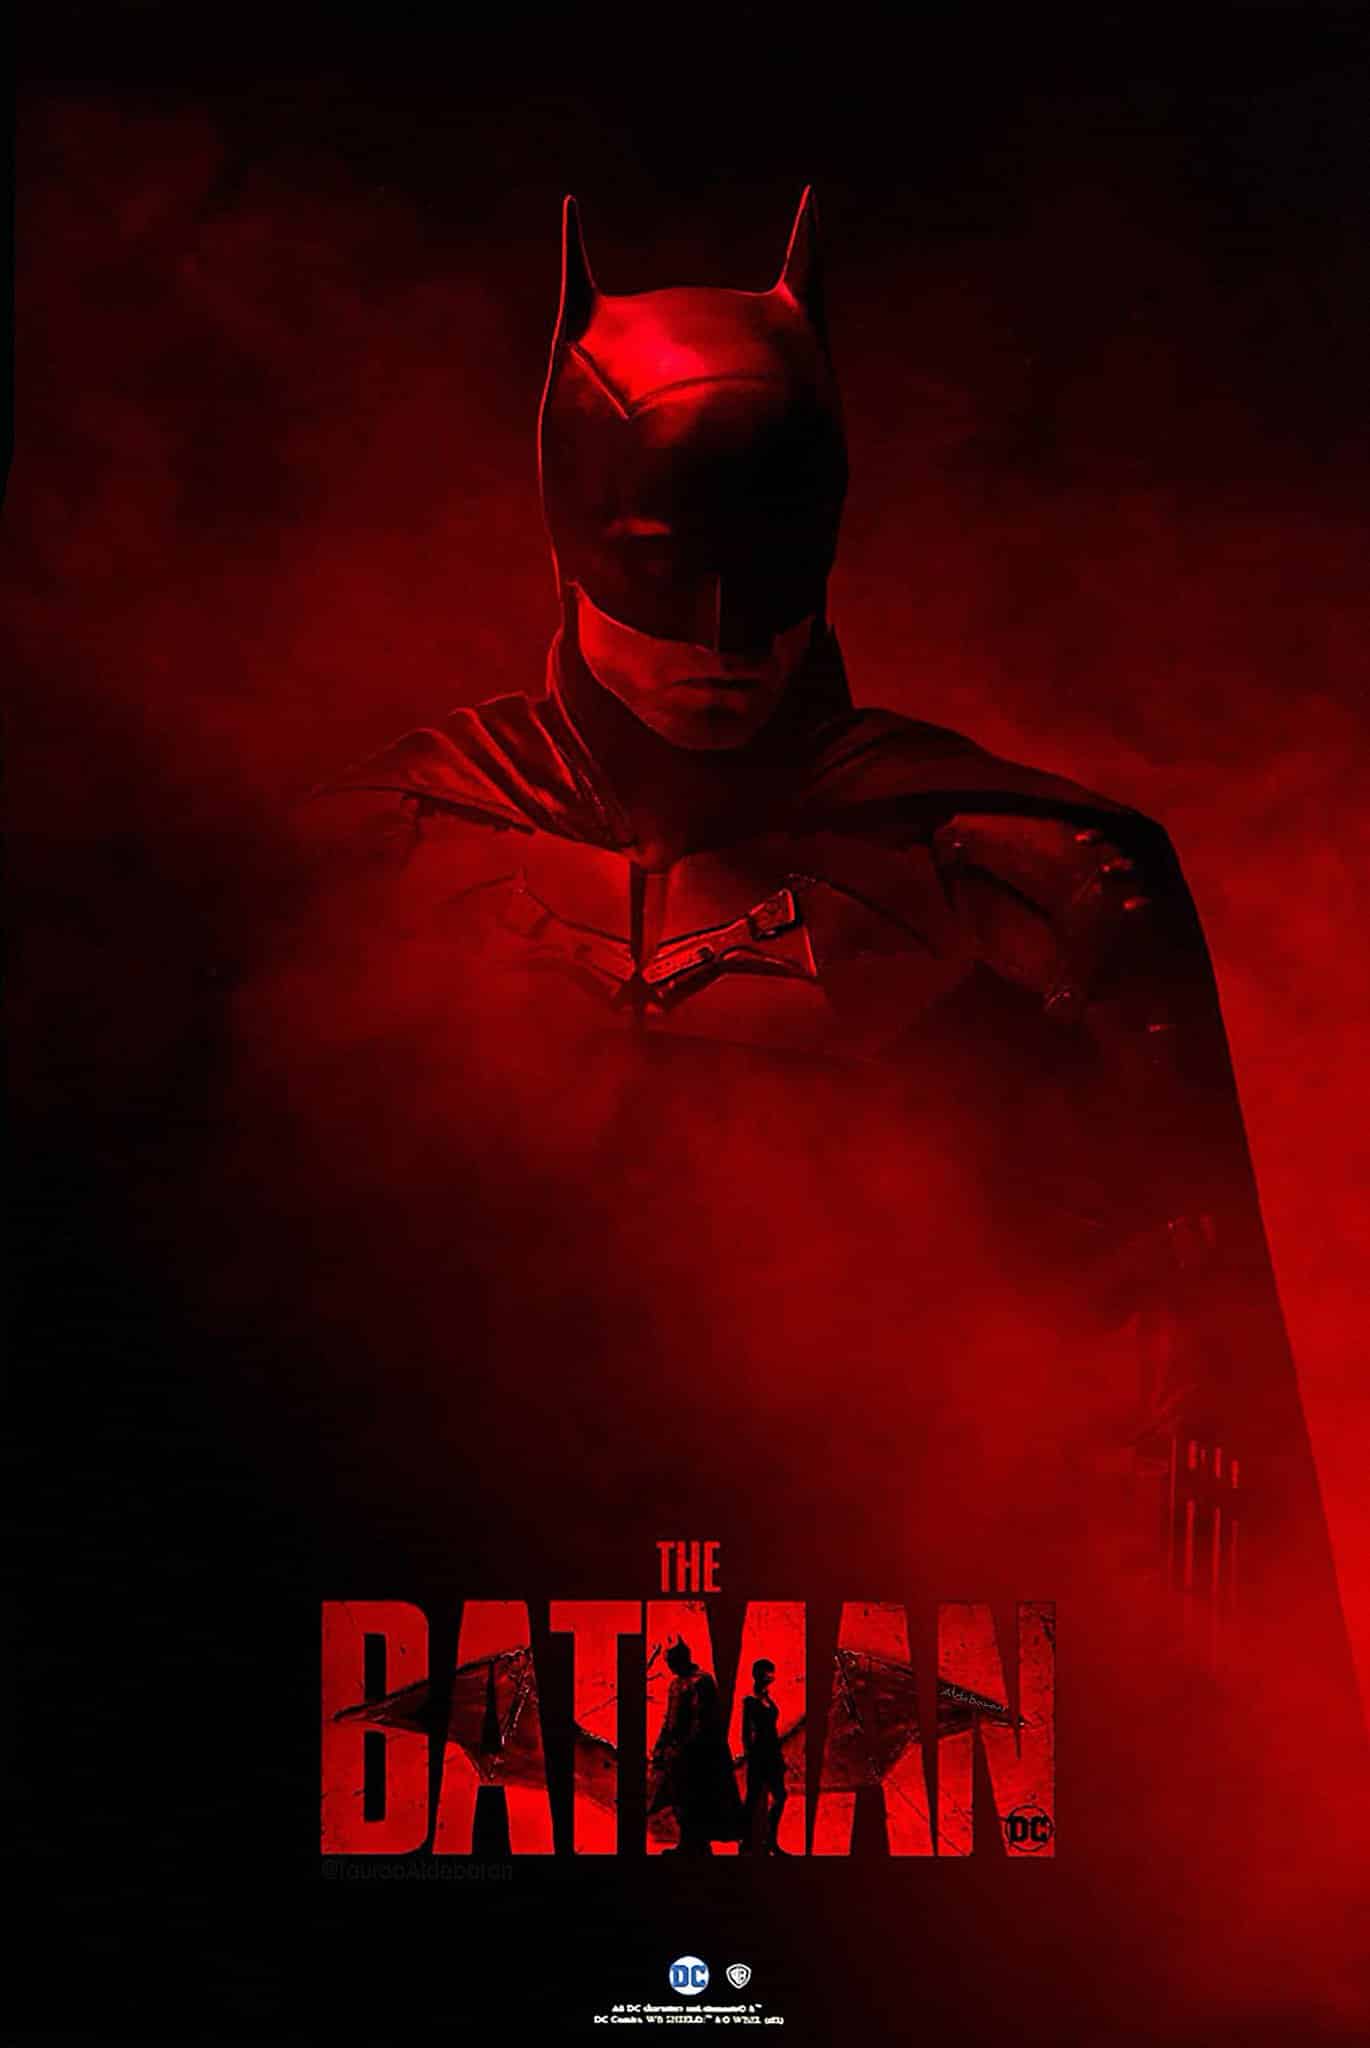 The flash no streaming | the flash | the batman: trailer, pôster e tempo de duração do filme foram divulgados | e0a531cc 5549864 | the flash